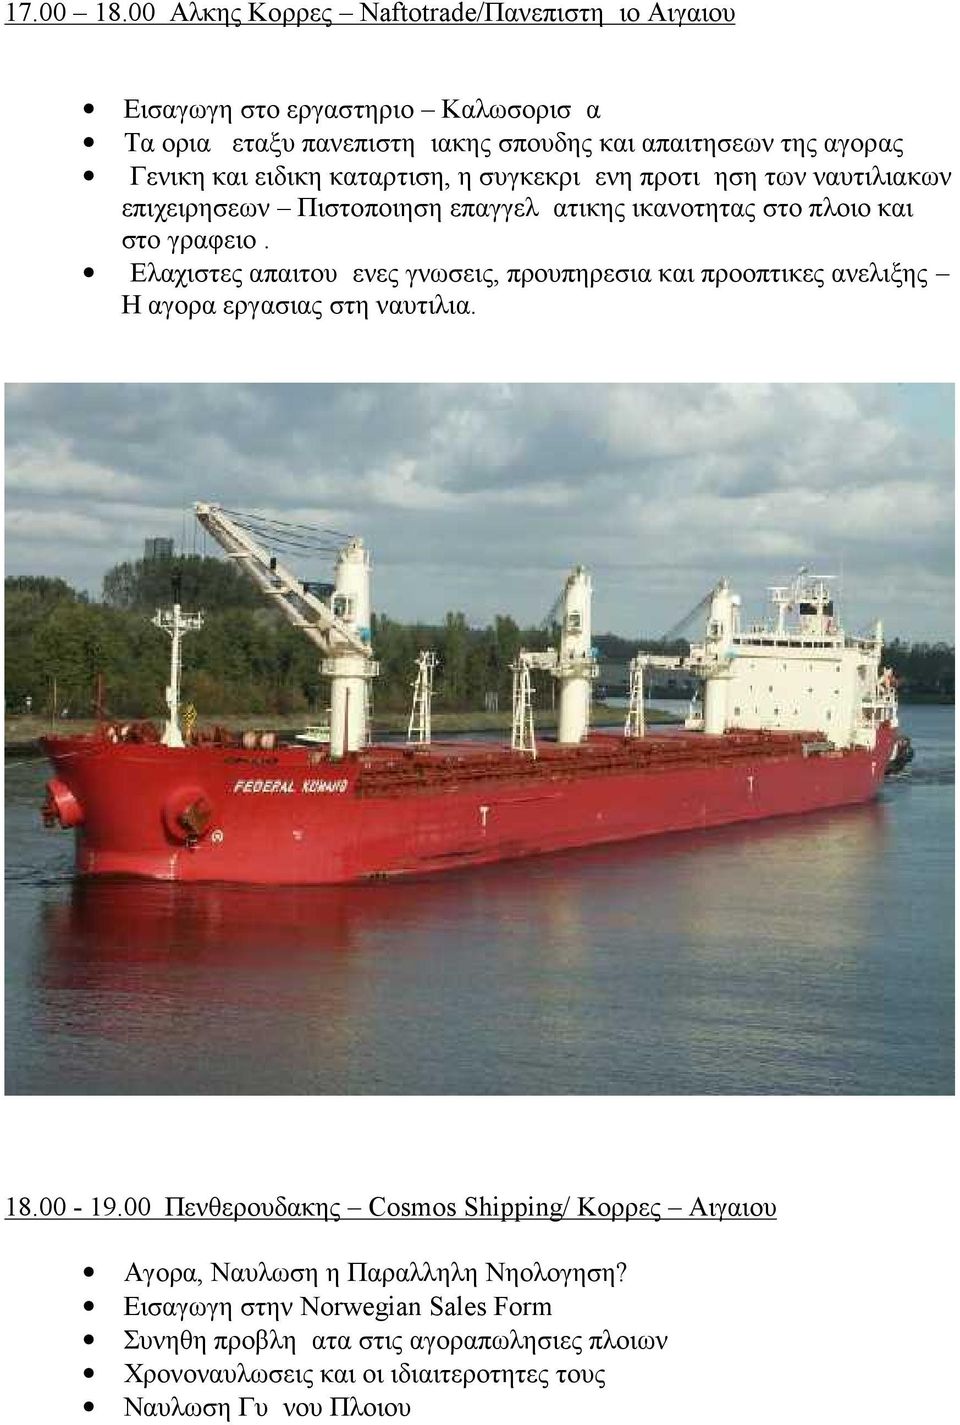 ειδικη καταρτιση, η συγκεκριμενη προτιμηση των ναυτιλιακων επιχειρησεων Πιστοποιηση επαγγελματικης ικανοτητας στο πλοιο και στο γραφειο.